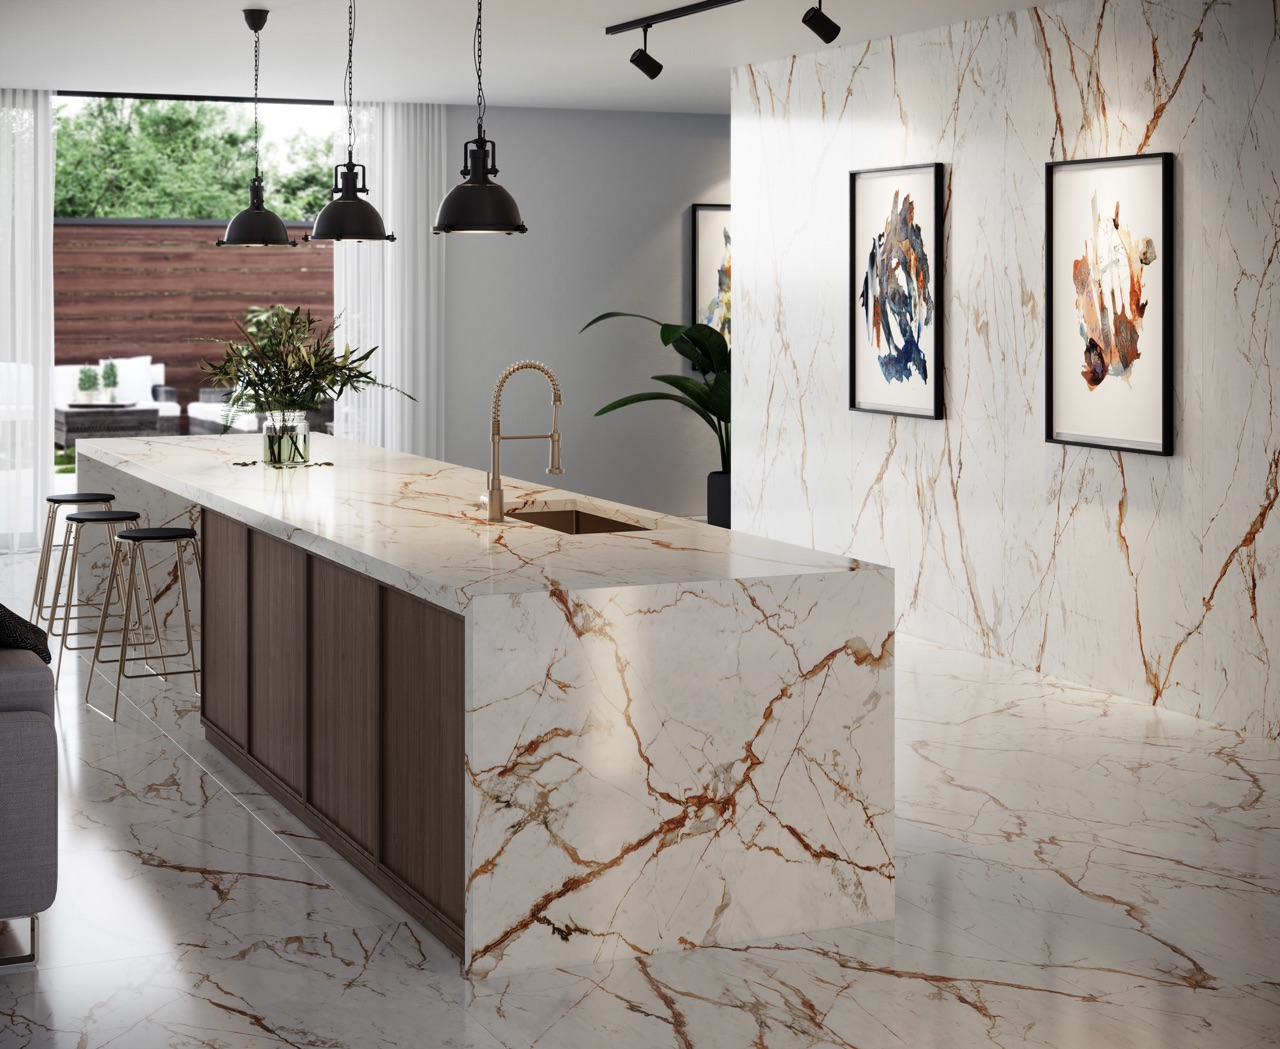 Paonazzo-Stein heißt die elegante Marmor-Optik in dieser Küche. Sie erstreckt sich über die Insel, den Boden und die Wand. Das ergibt eine harmonische Einheit. Die strenge Anmutung wird von strukturierten Holzfronten und Details in Gold kontrastiert. Aus der Dekton-Serie „Awake“ von Cosentino.